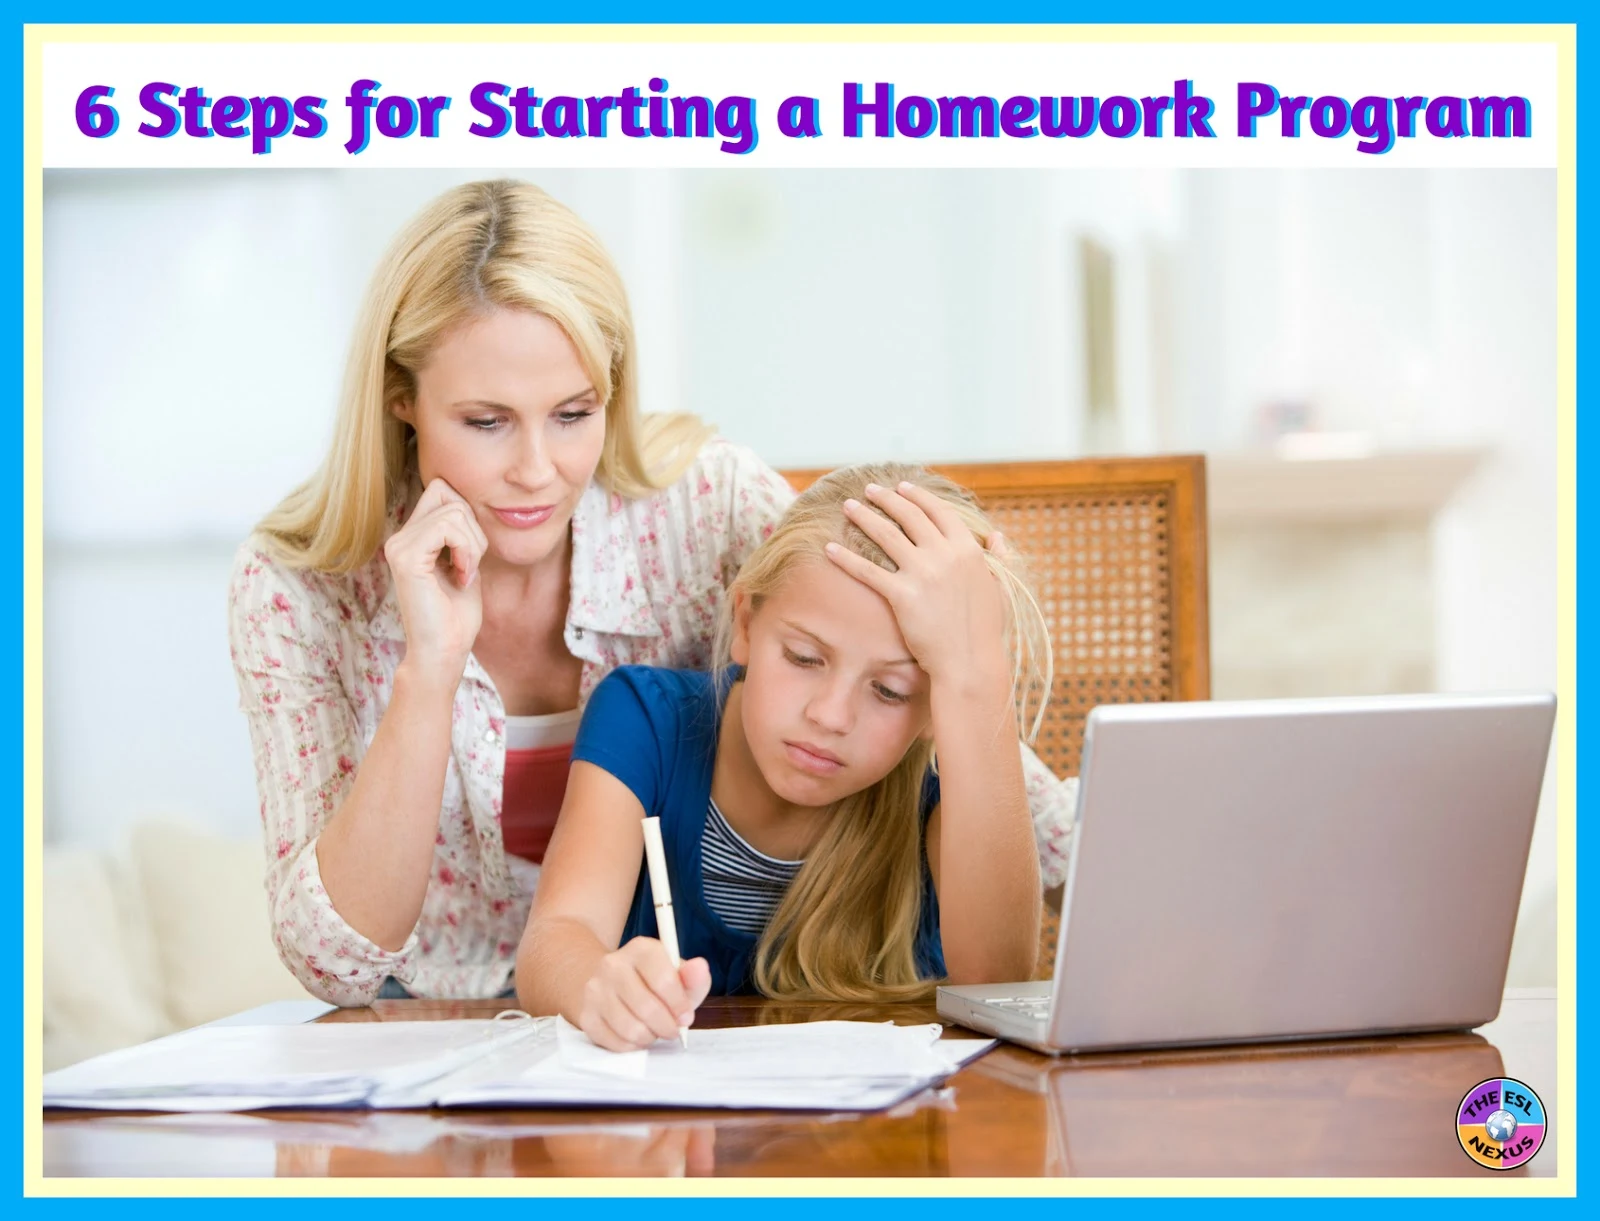 6 steps for starting a homework program.